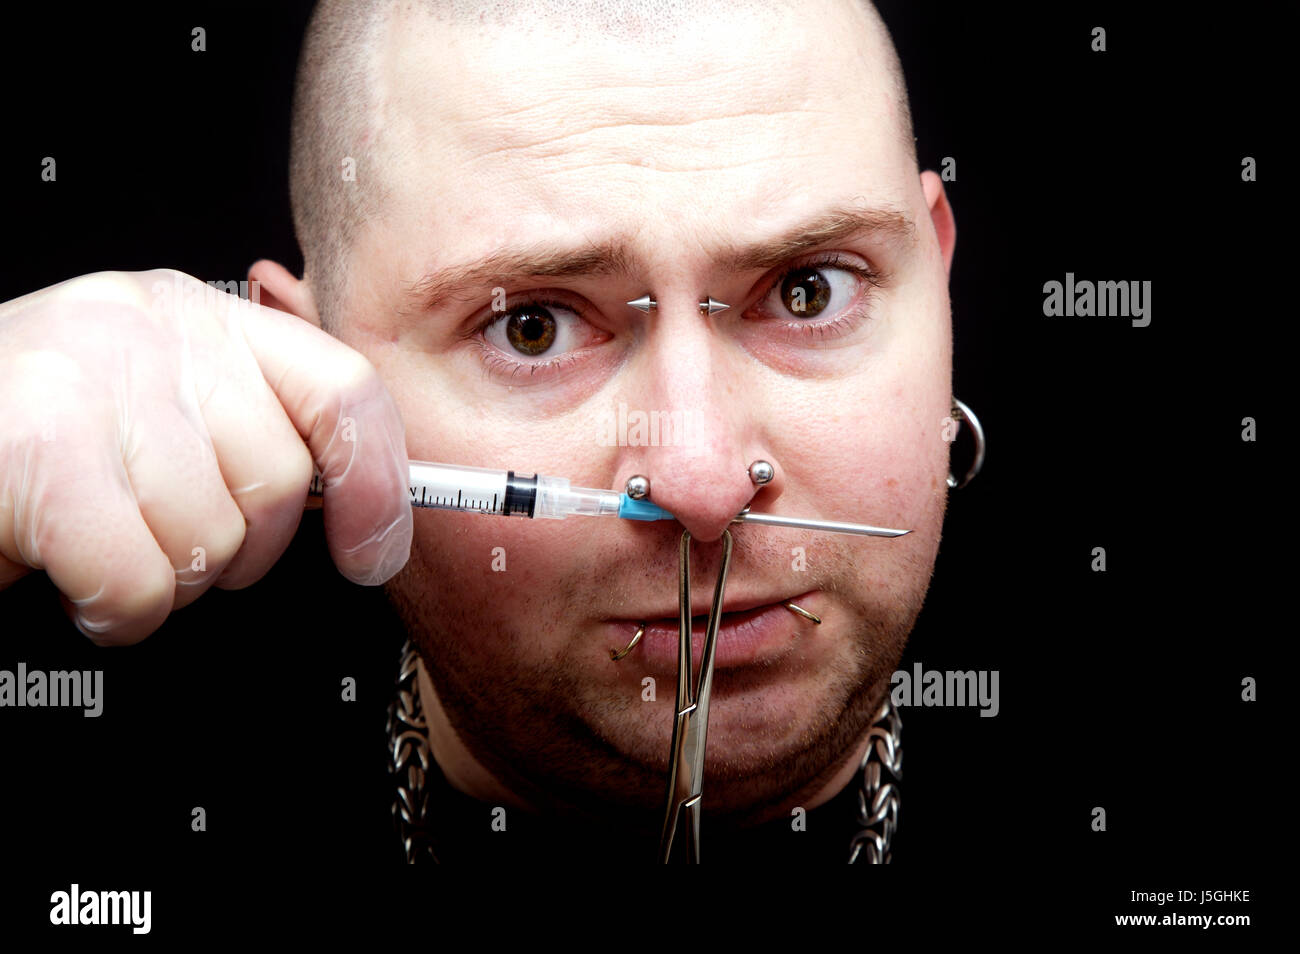 Processeur pont douleur bijoux piercing hold concentration apprendre sting  Photo Stock - Alamy